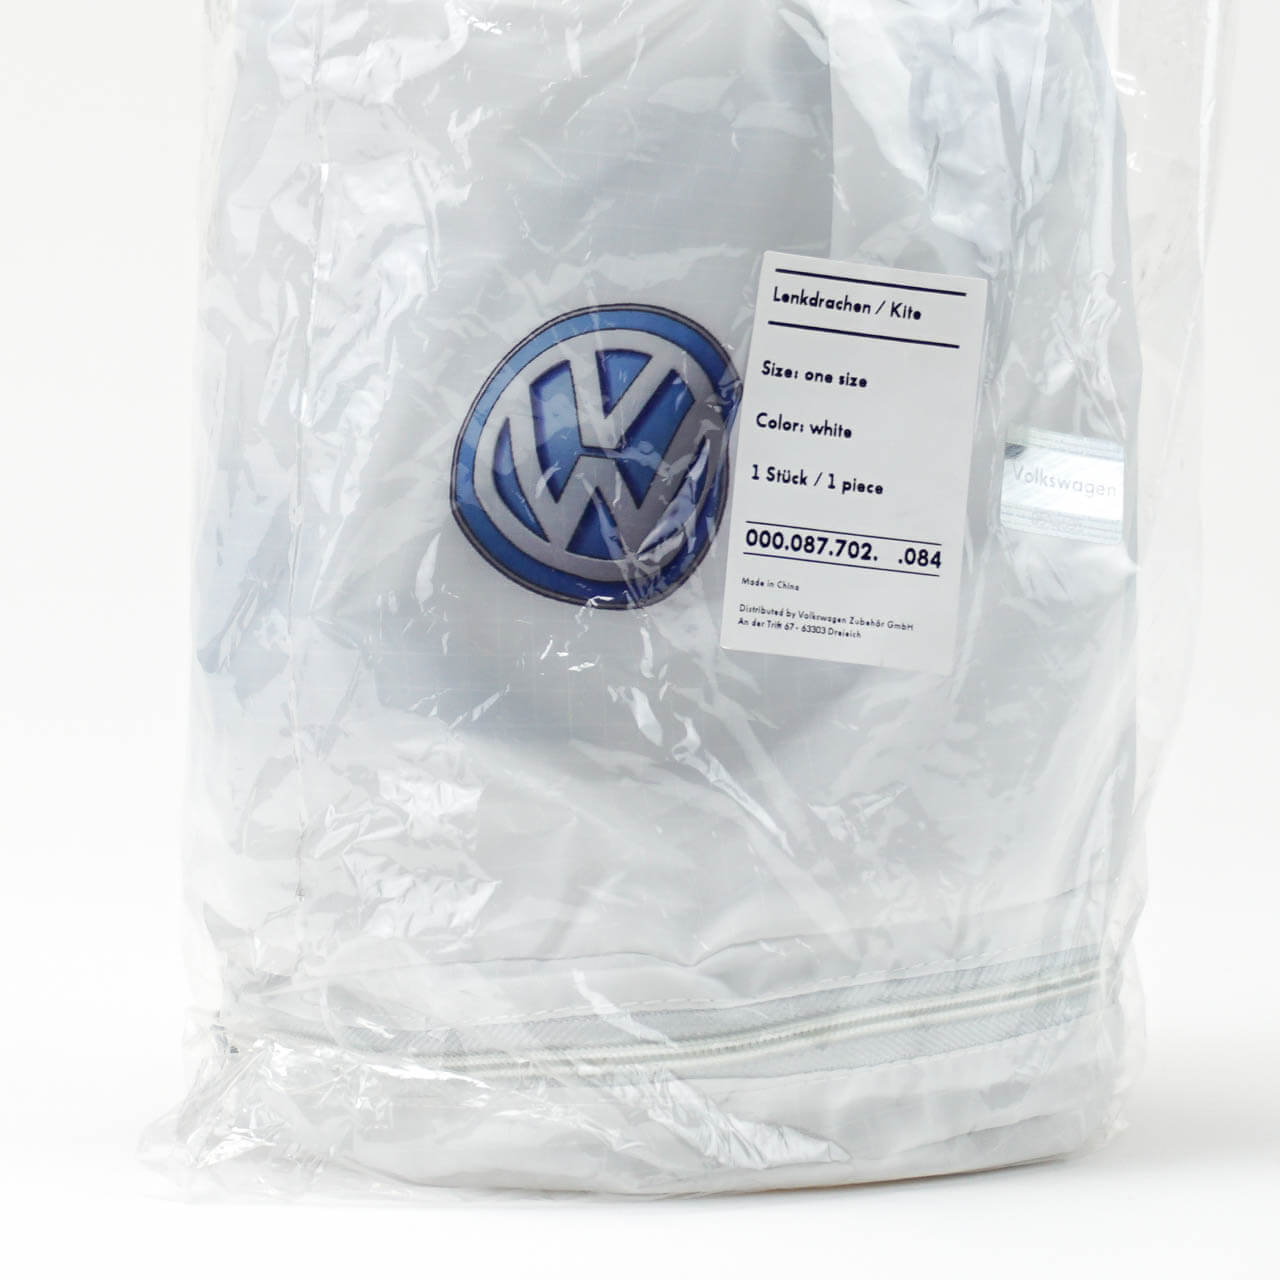 Lenkdrache VW - 000087702 084